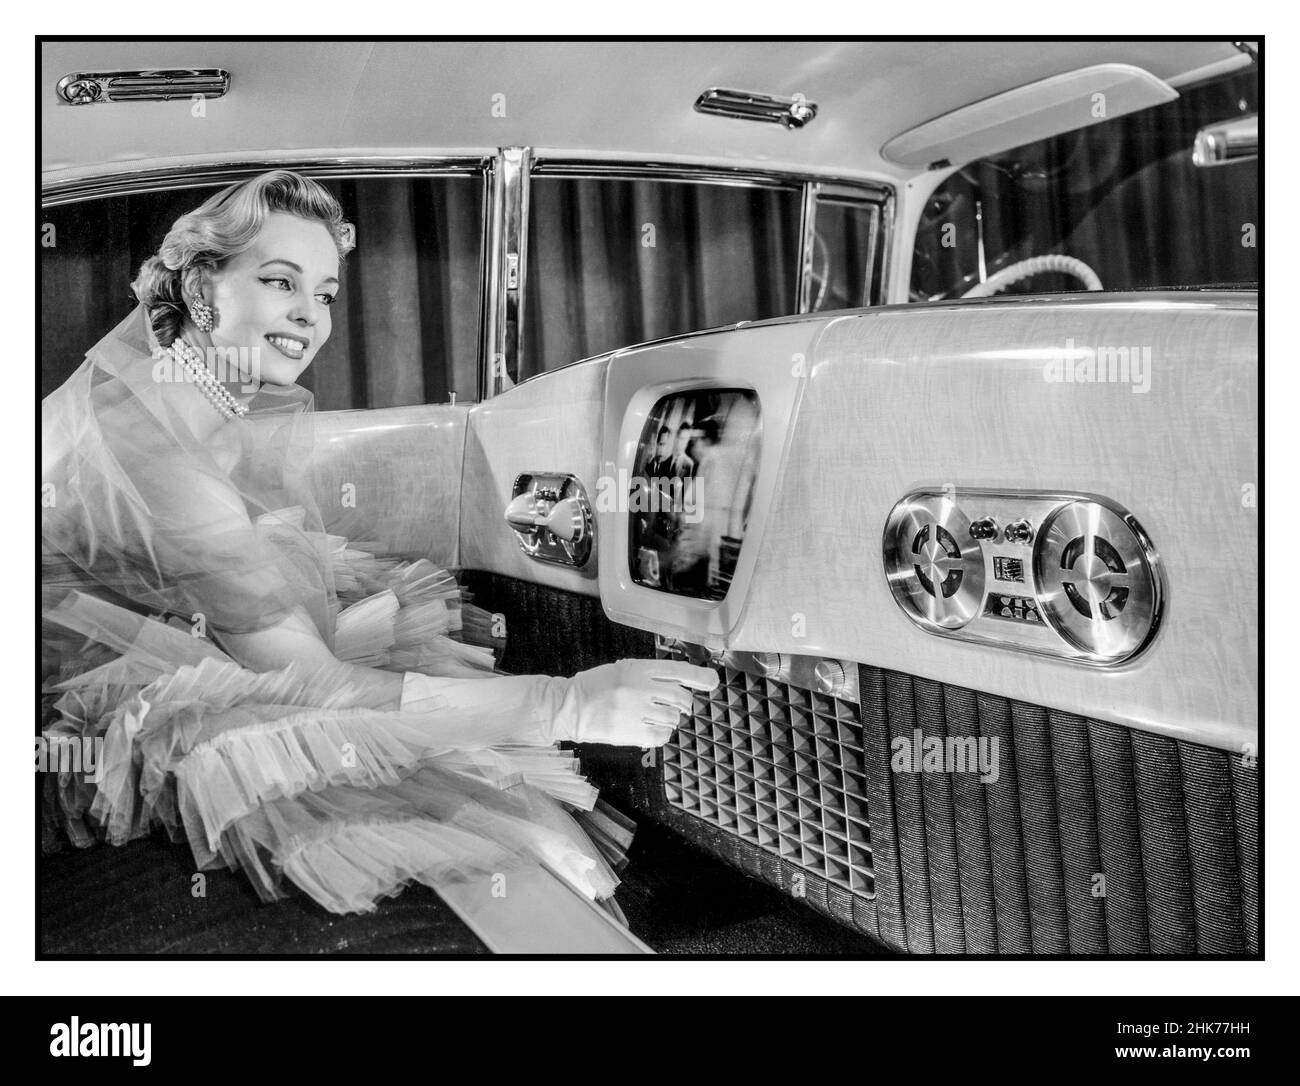 Vintage 1955 Cadillac Westchester voiture intérieure de luxe avec téléphone, magnétophone et TV automobile 14' salon de voiture, avec modèle féminin démontrant une vision de l'avenir de l'automobile avec des accessoires de luxe tels que la voiture TV téléphone 14 pouces télévision, un téléphone, magnétophone,Et des panneaux en bois d'or Korina parmi les caractéristiques de luxe insolites de la voiture d'exposition Westchester 1955 de Cadillac Banque D'Images